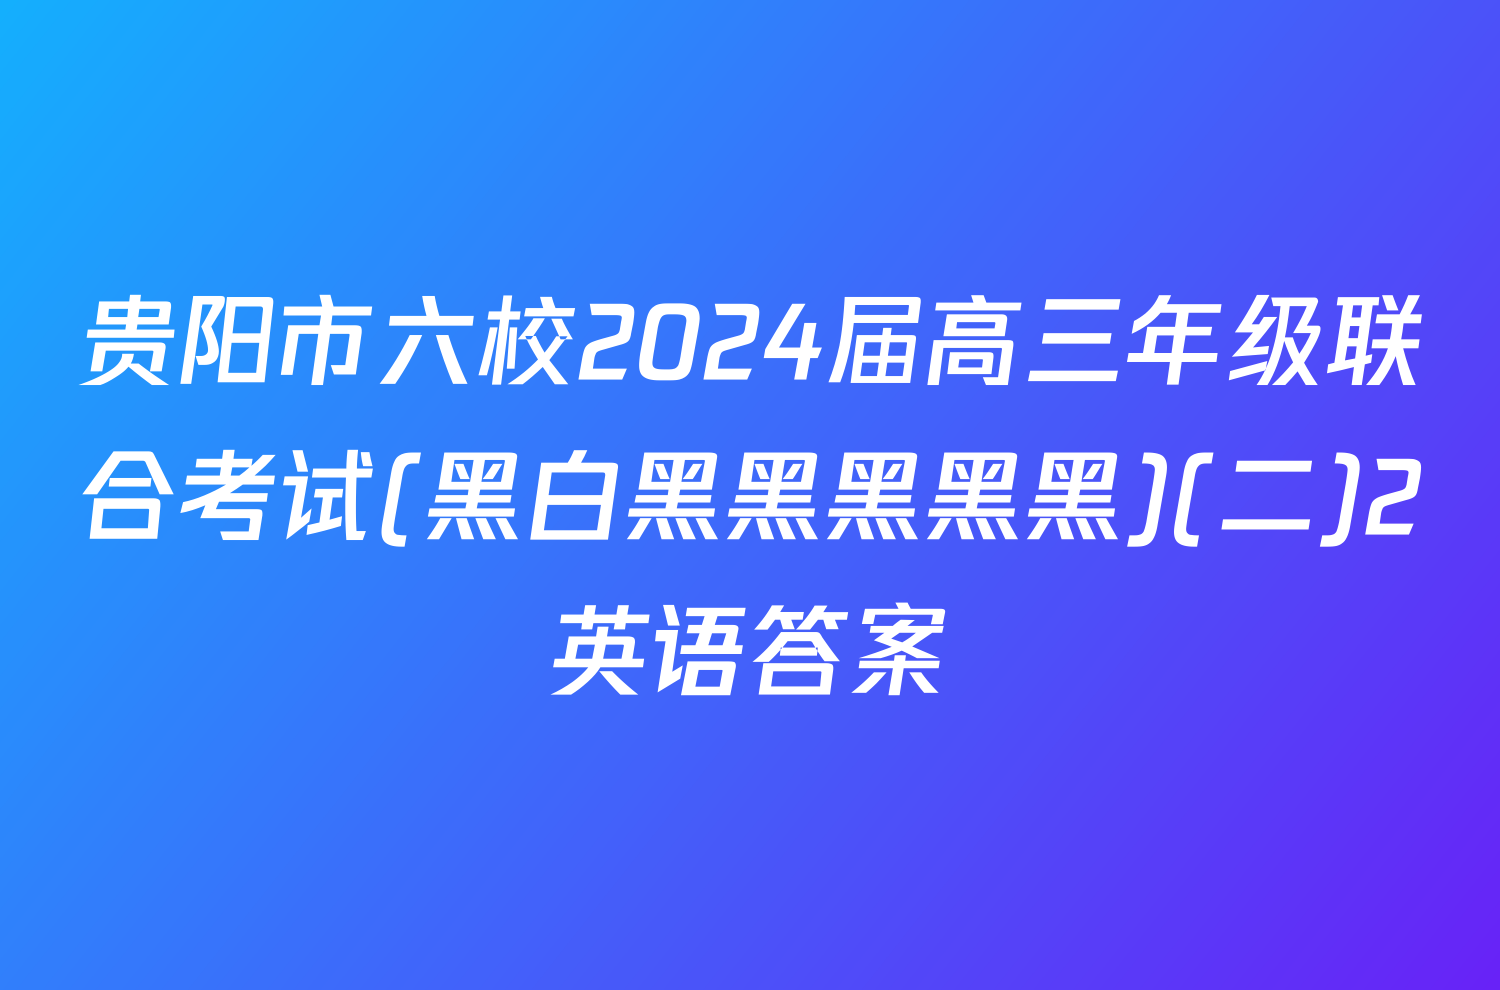 贵阳市六校2024届高三年级联合考试(黑白黑黑黑黑黑)(二)2英语答案